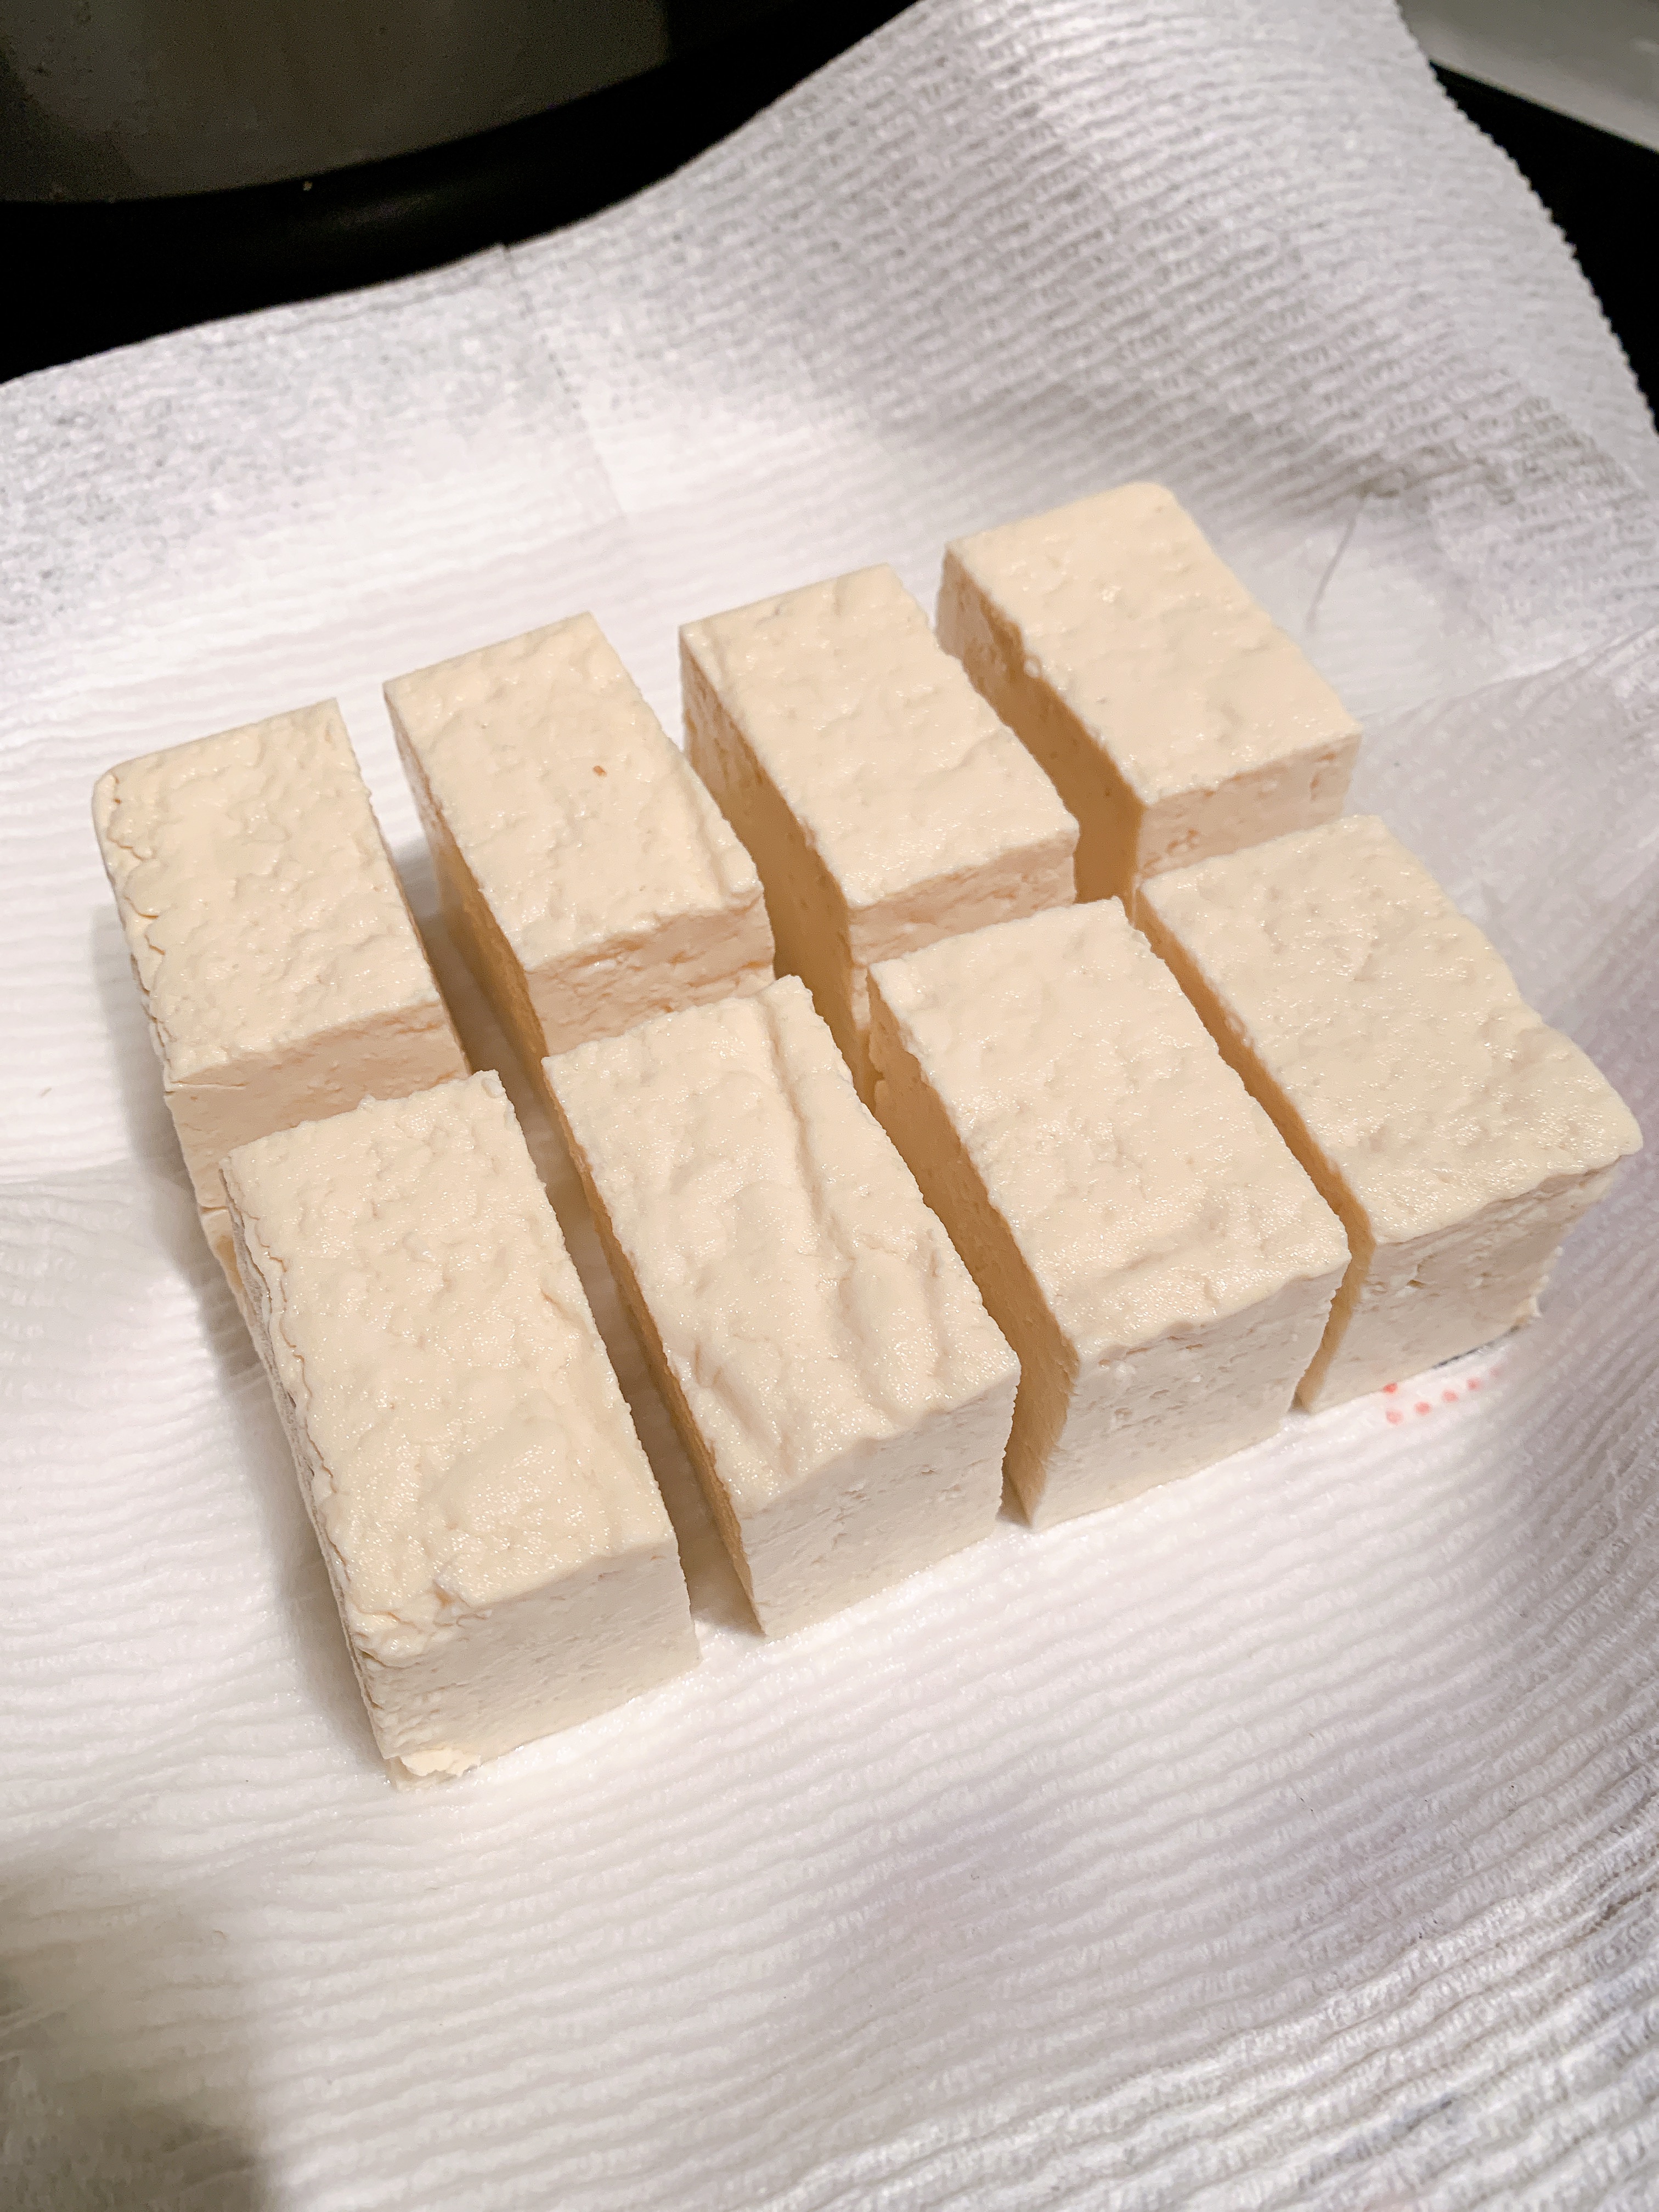 Easy Air Fryer Agedashi Tofu Recipe In Under 30 Min Airfryd